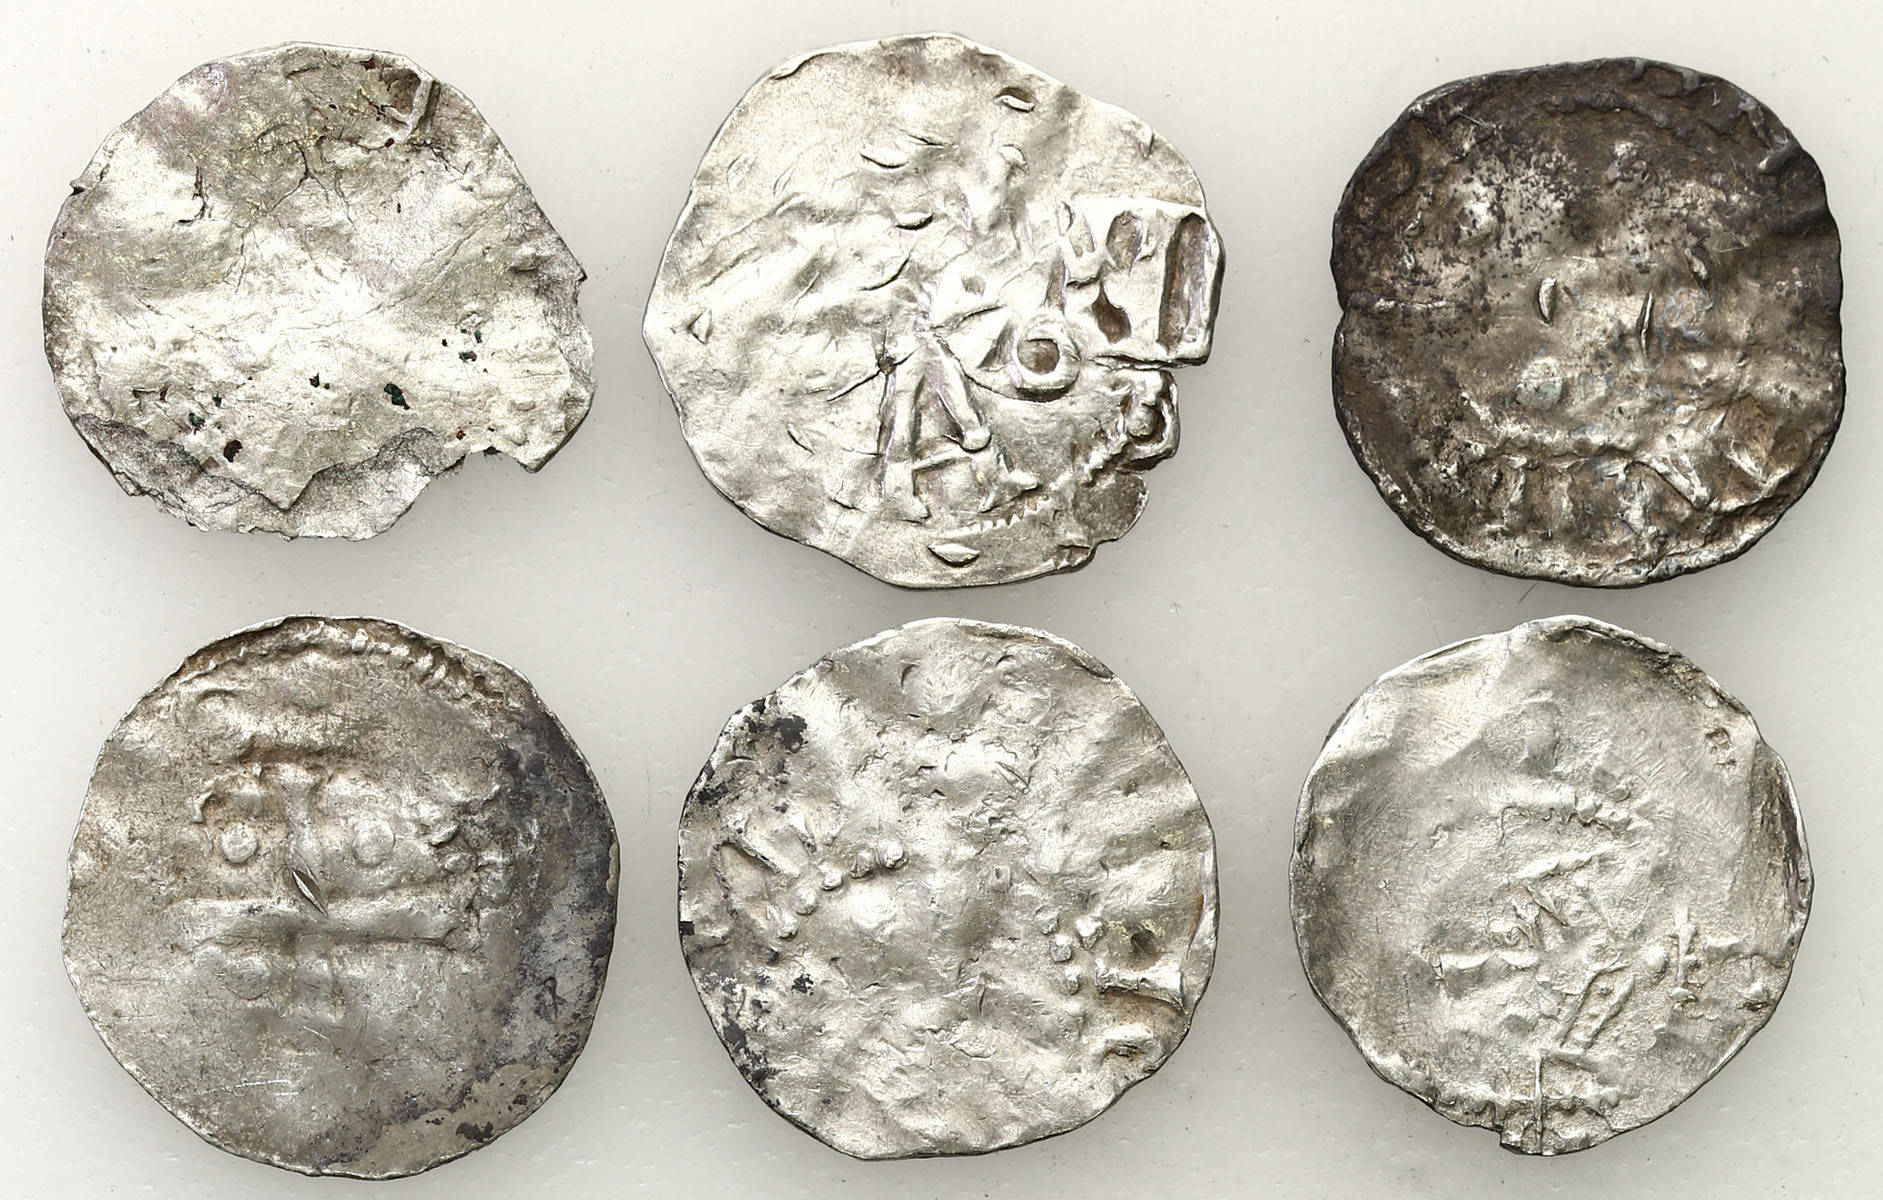 Niemcy, Dolna Lotaryngia - Kolonia, X/XI wiek. Denar typu kolońskiego i ich naśladownictwa, zestaw 6 monet